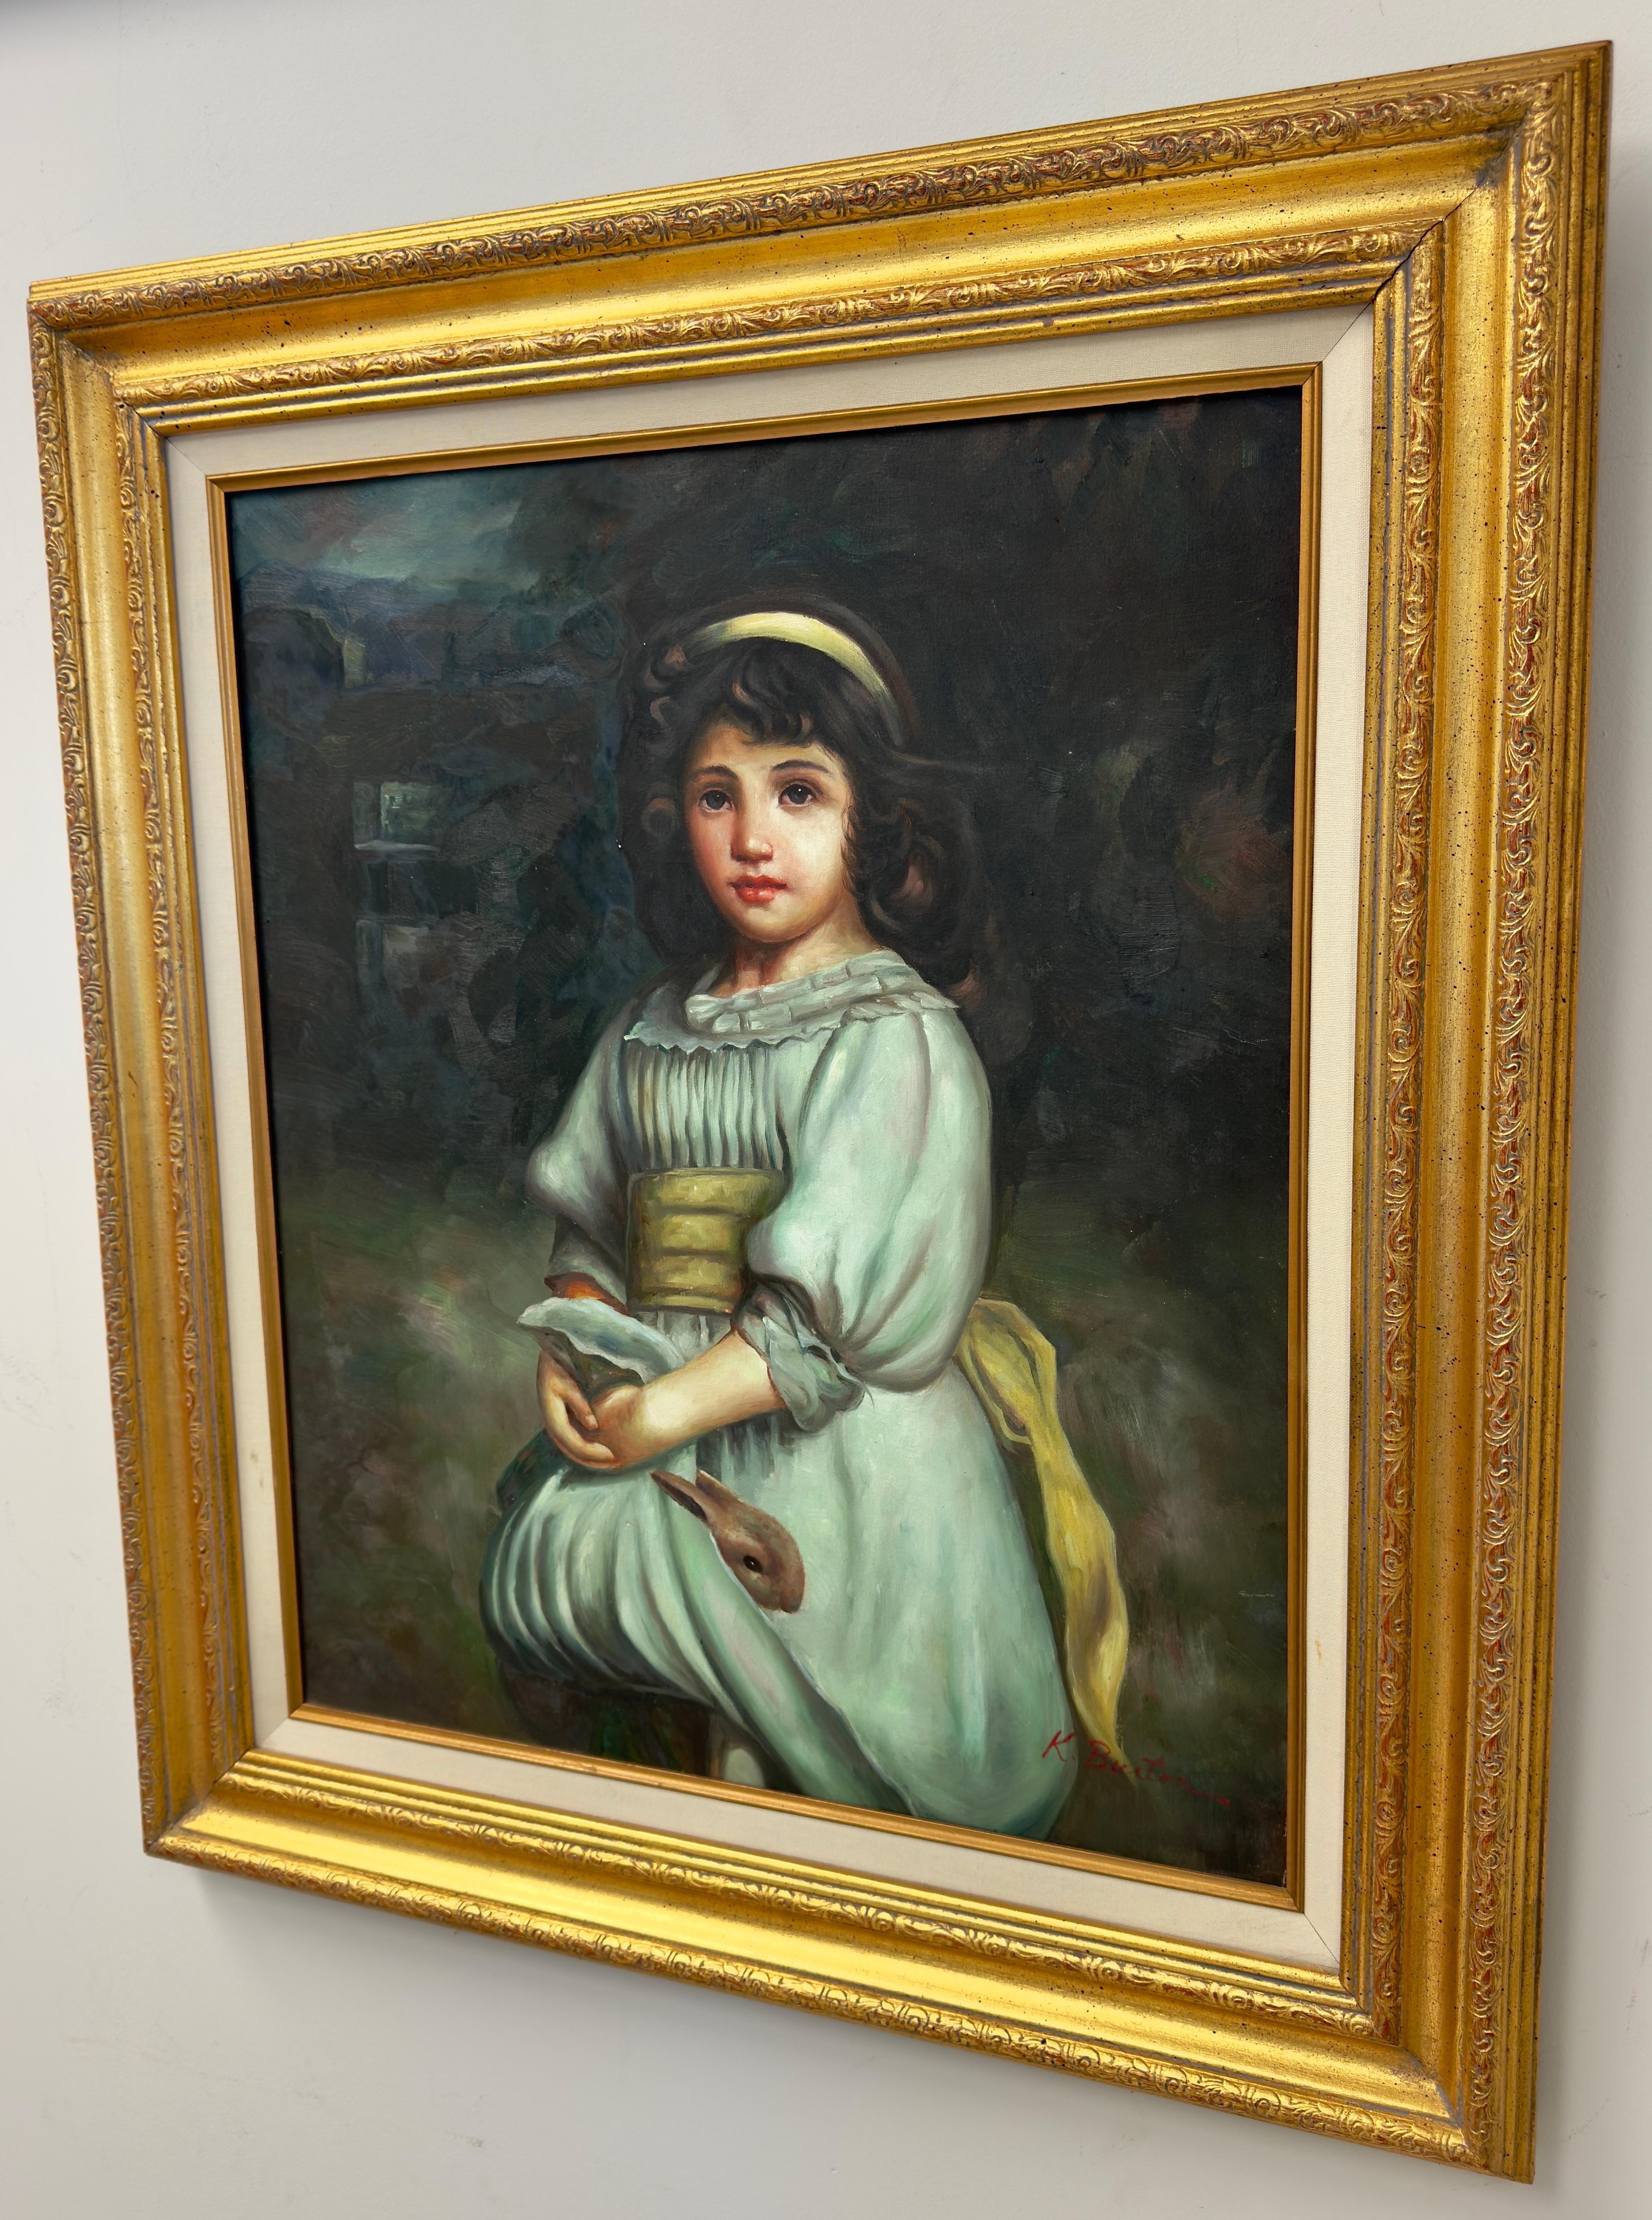 Joli portrait d'une jeune fille portant une robe vert clair avec une ceinture jaune et des cheveux ornés d'un ruban jaune sur un fond sombre.  Le portrait à l'huile sur toile est signé par l'artiste en rouge en bas à droite  